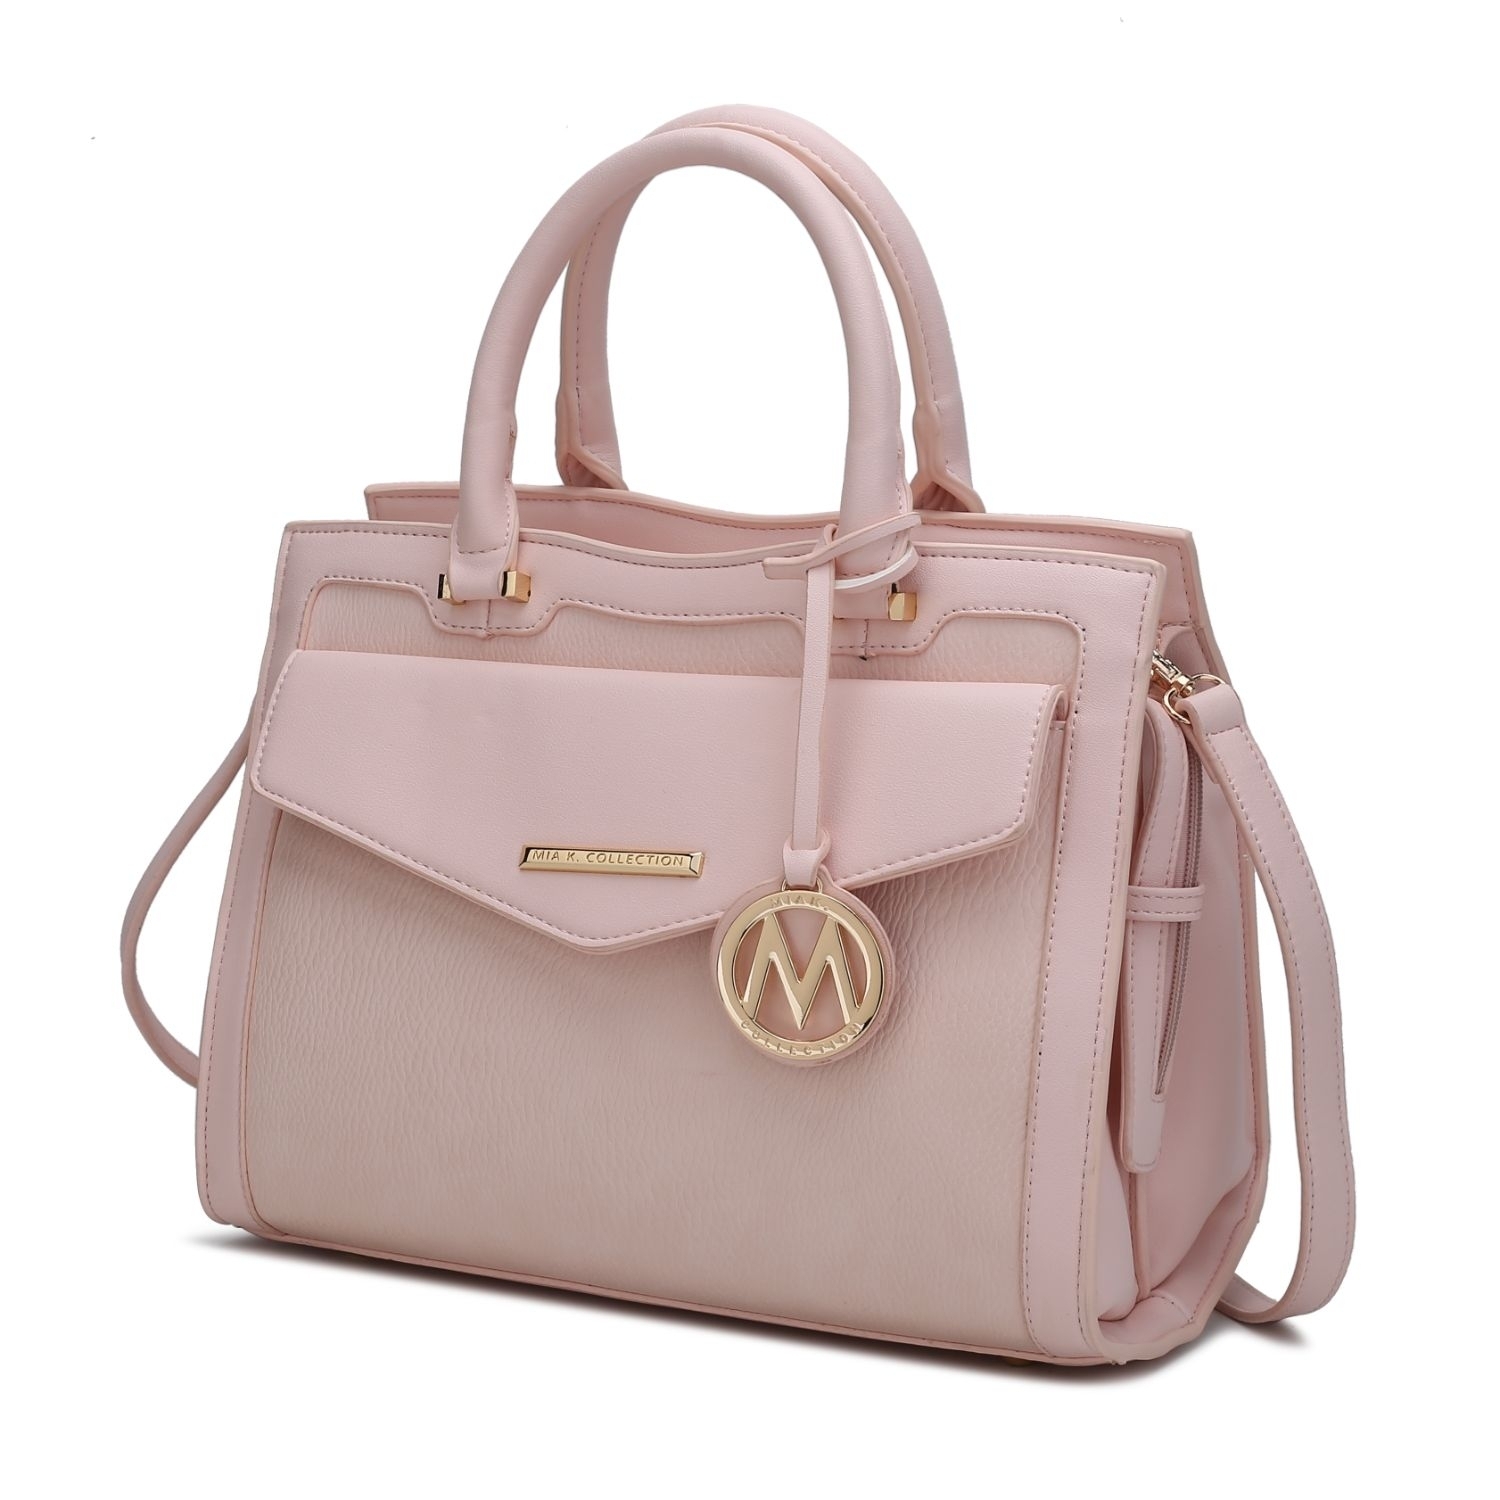 MKF Collection Alyssa Satchel Handbag By Mia K. - Light Pink